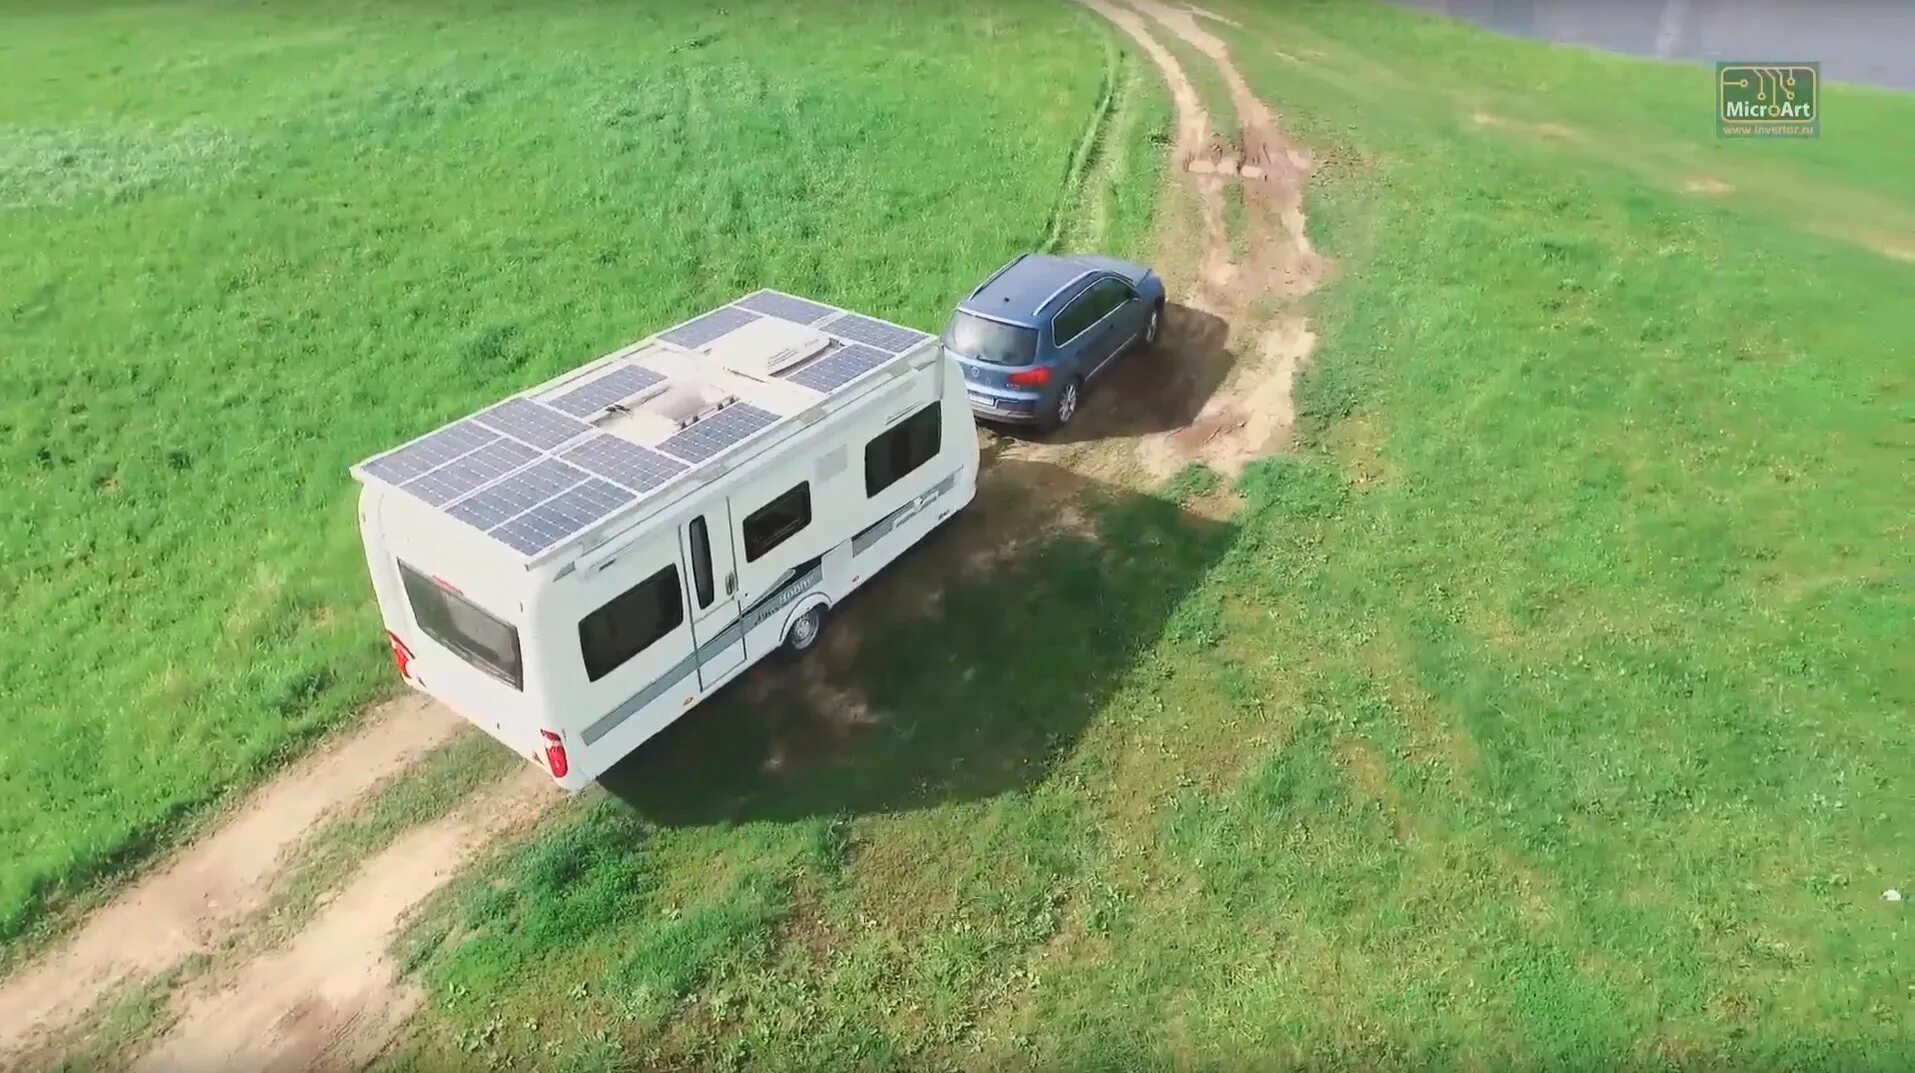 Трейлер где живут. Автодом с солнечными панелями. Солнечные батареи на кемпер. Автодом на солнечных батареях. Дом на колесах с солнечными батареями.